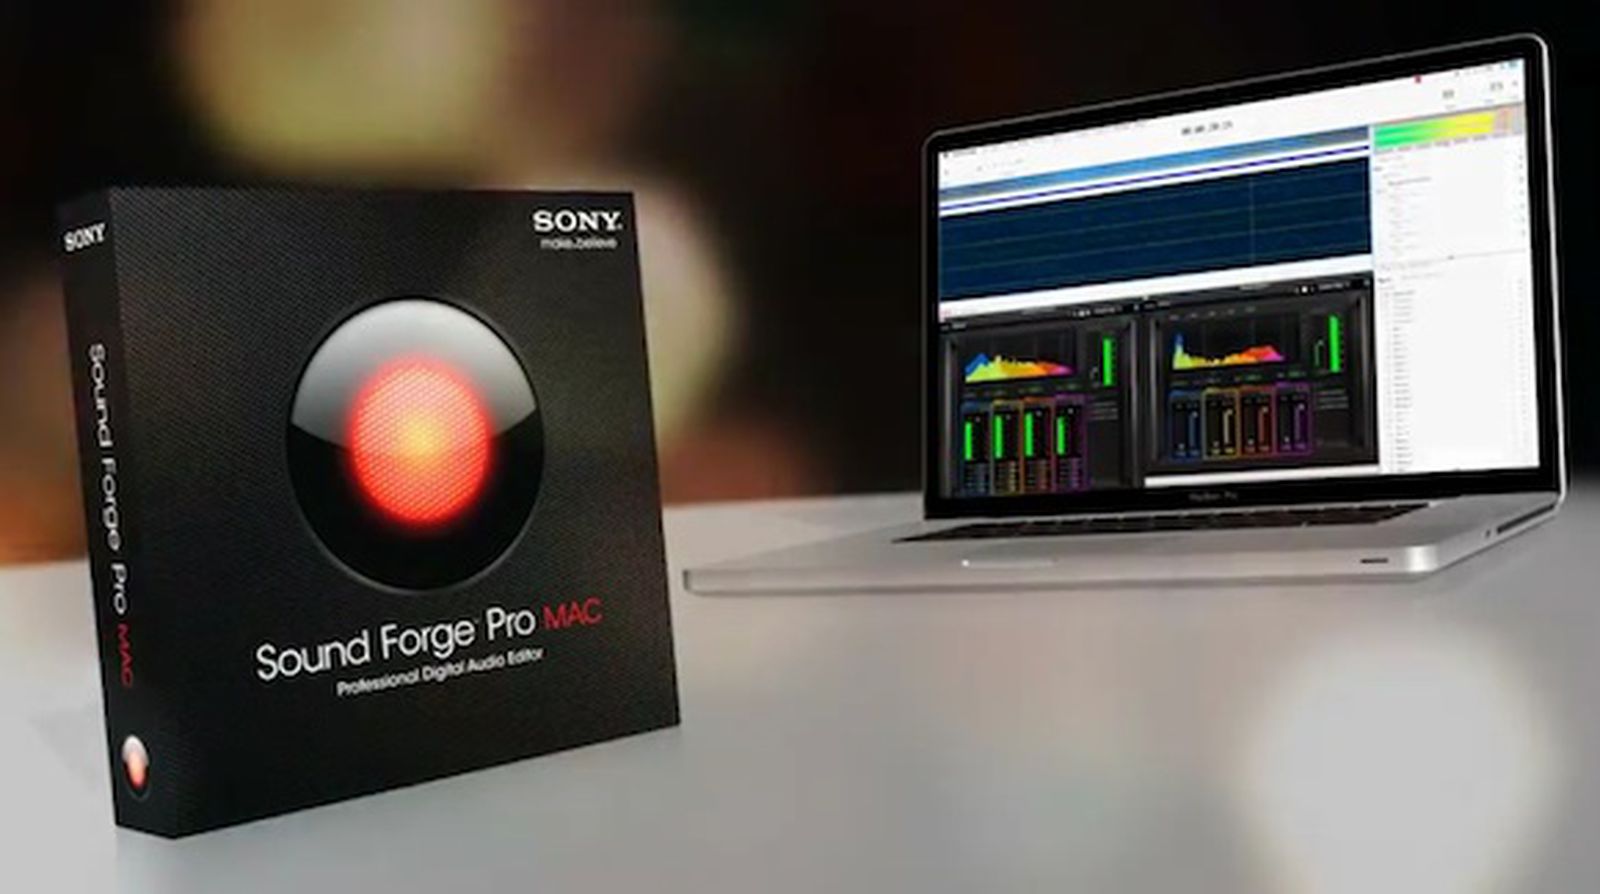 sony sound forge audio studio 9.0 serial key